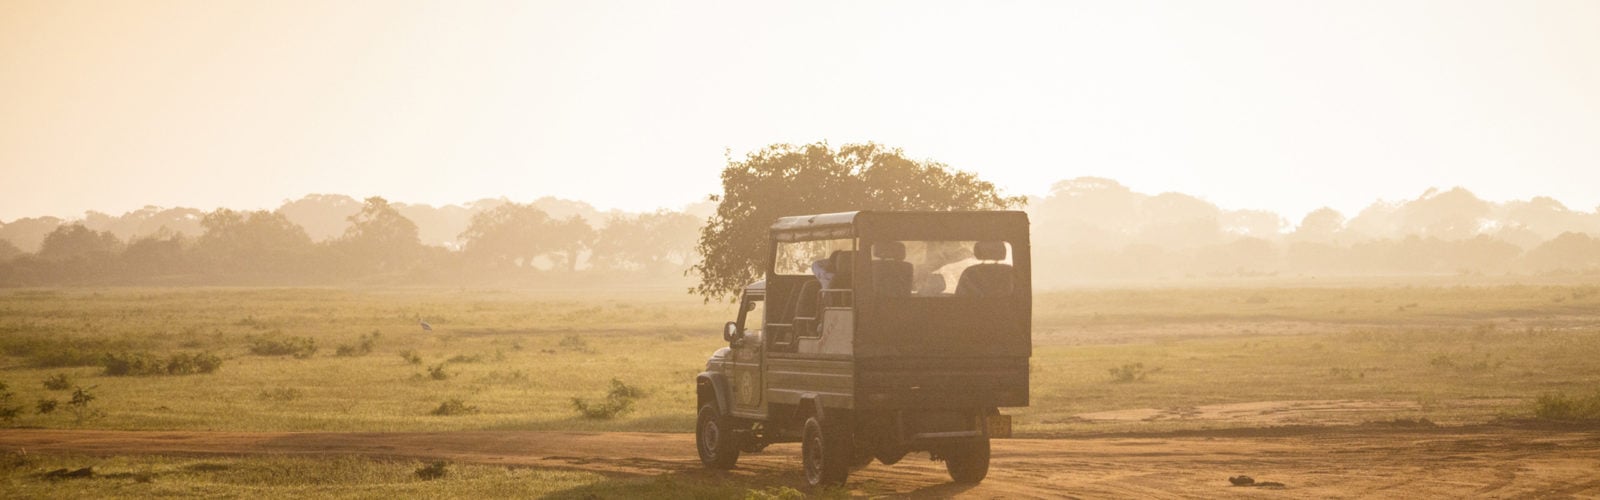 Safari car on sunrise in Yala National Park, Sri Lanka